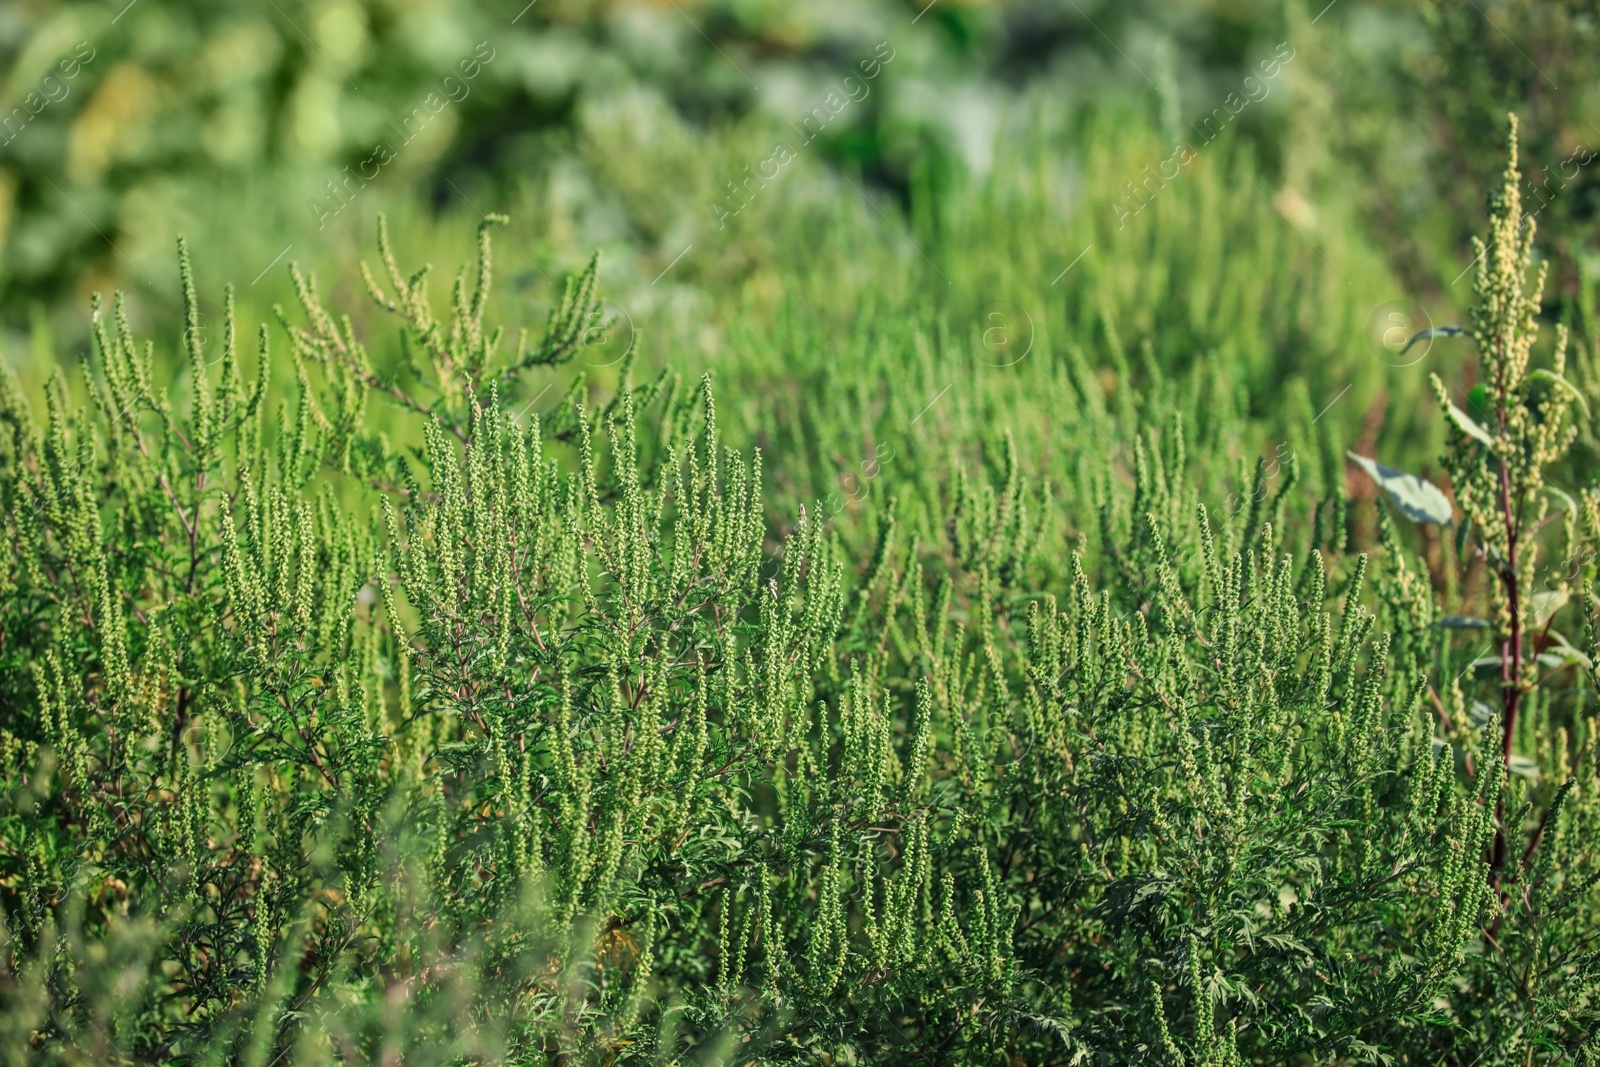 Photo of Blooming ragweed plants (Ambrosia genus) outdoors. Seasonal allergy